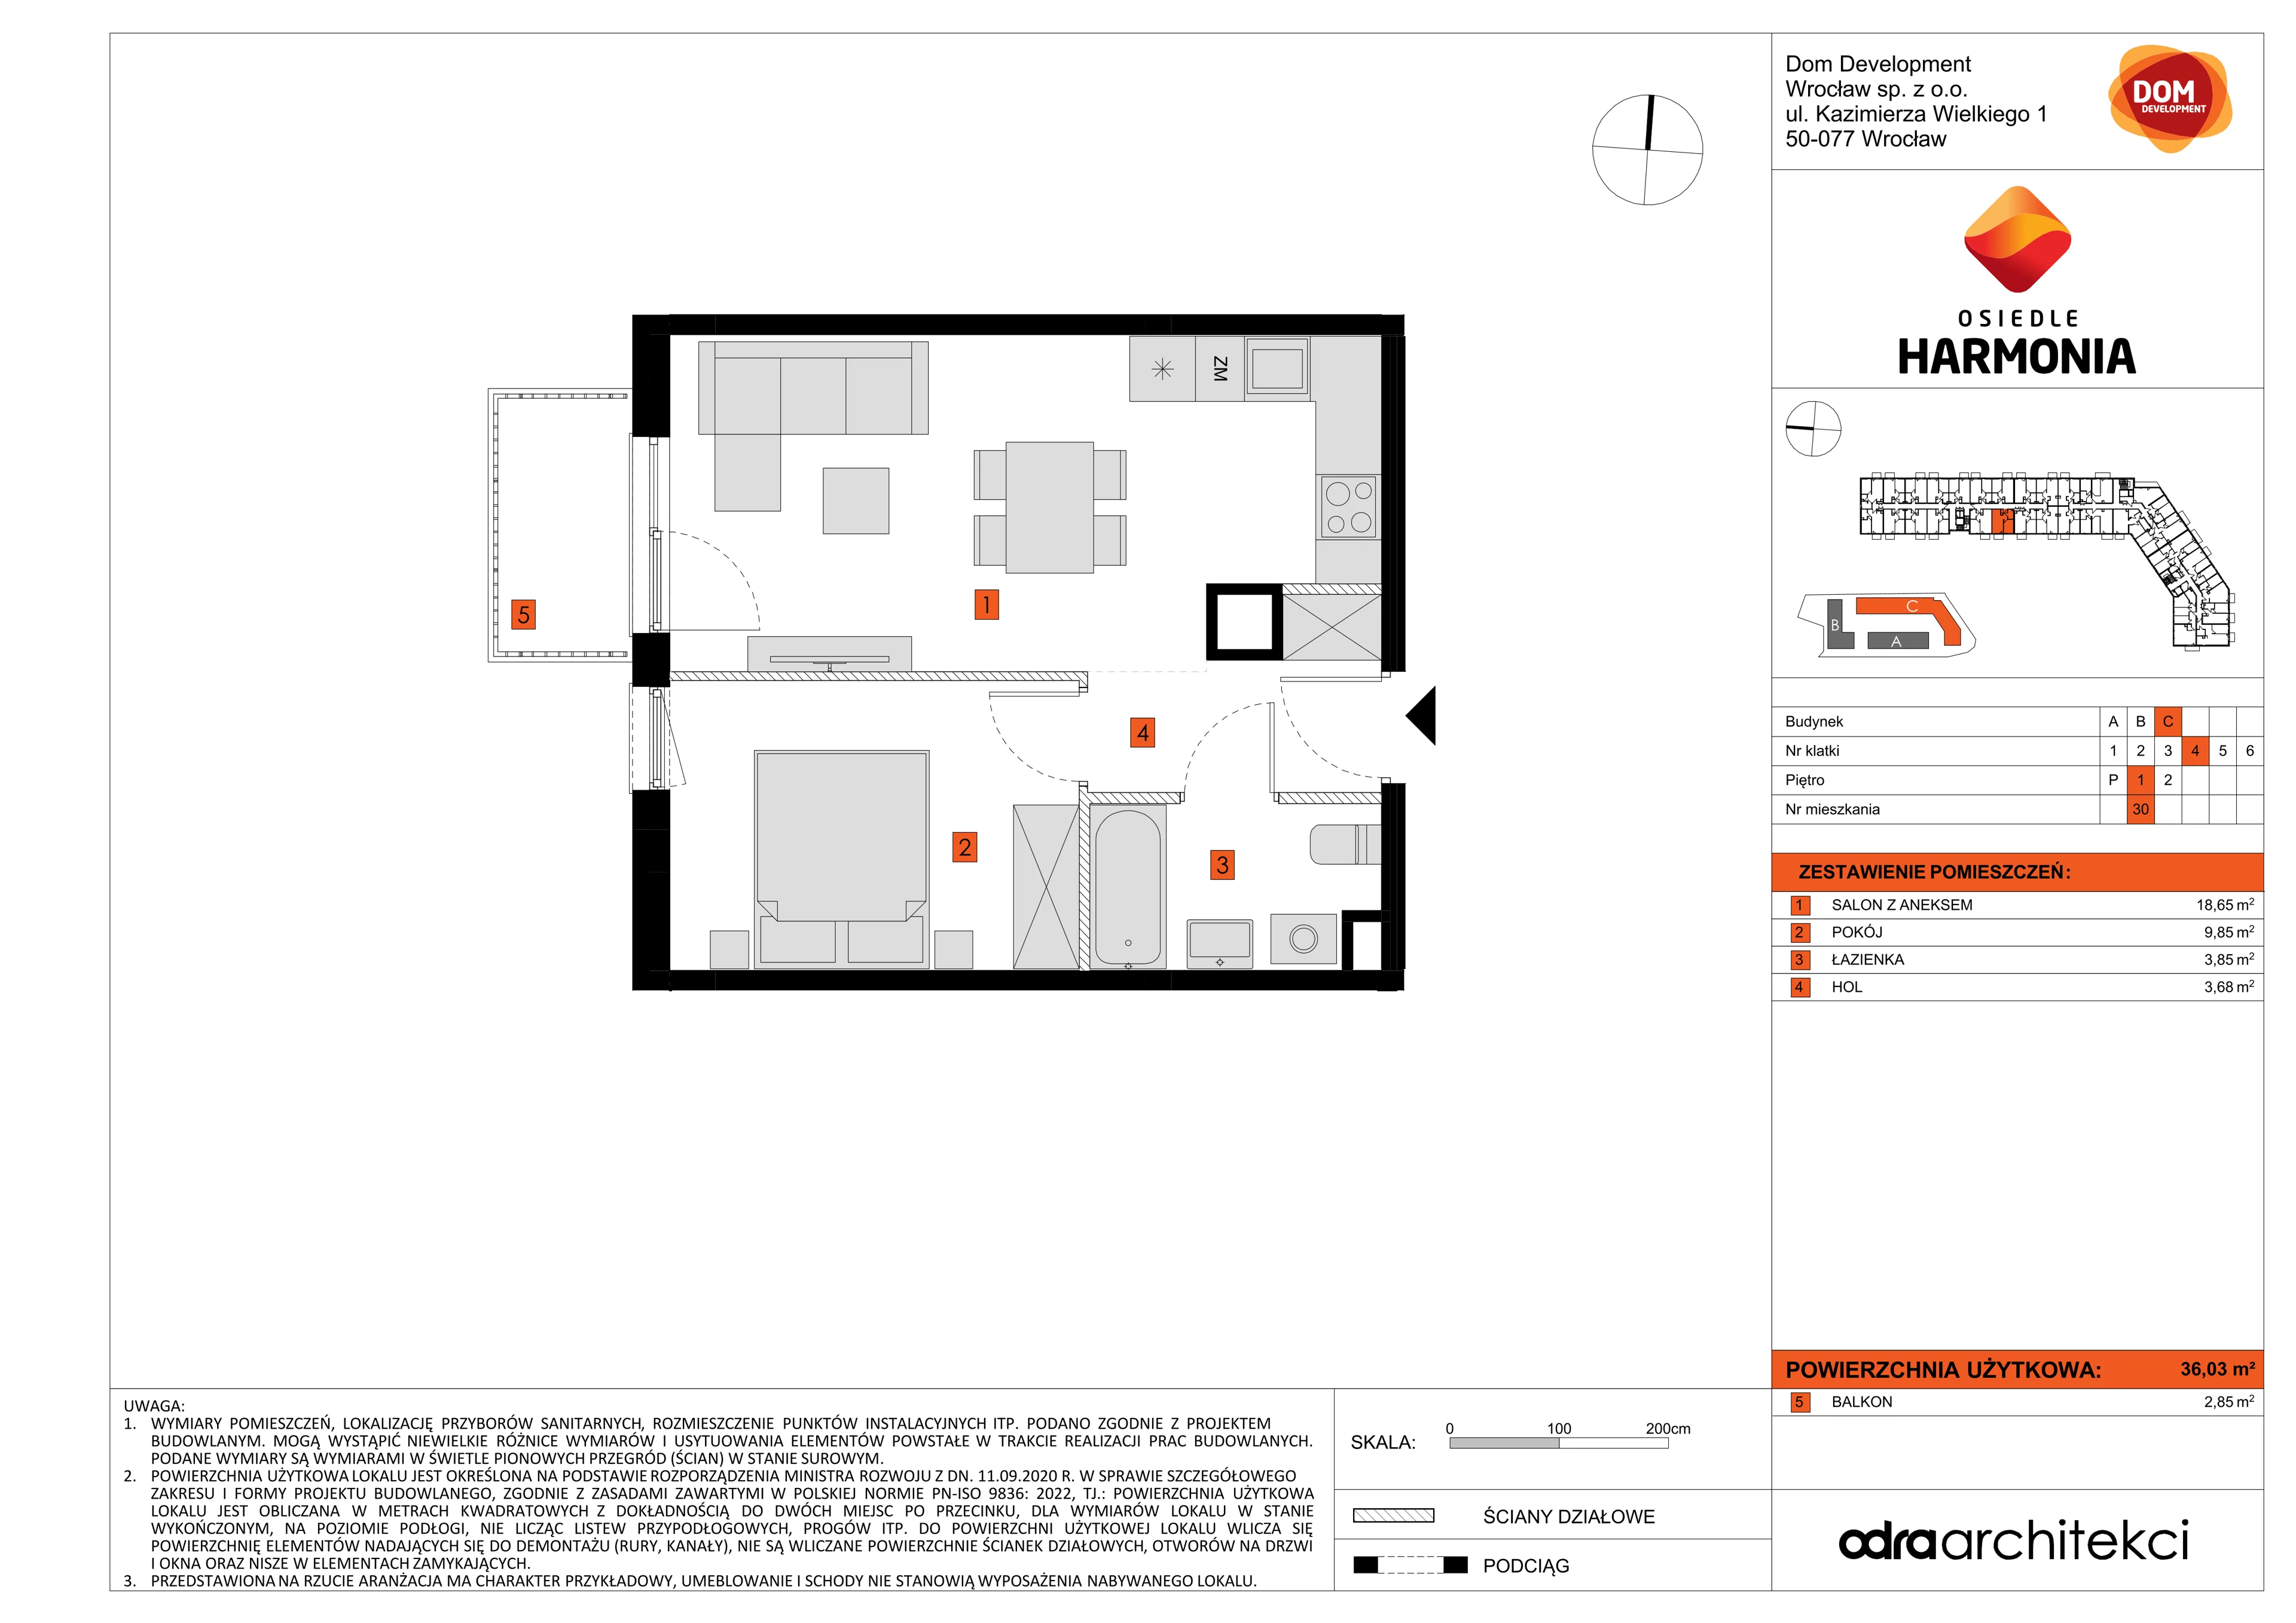 Mieszkanie 36,03 m², piętro 1, oferta nr C/30, Osiedle Harmonia, Wrocław, Maślice, ul. Stodolna